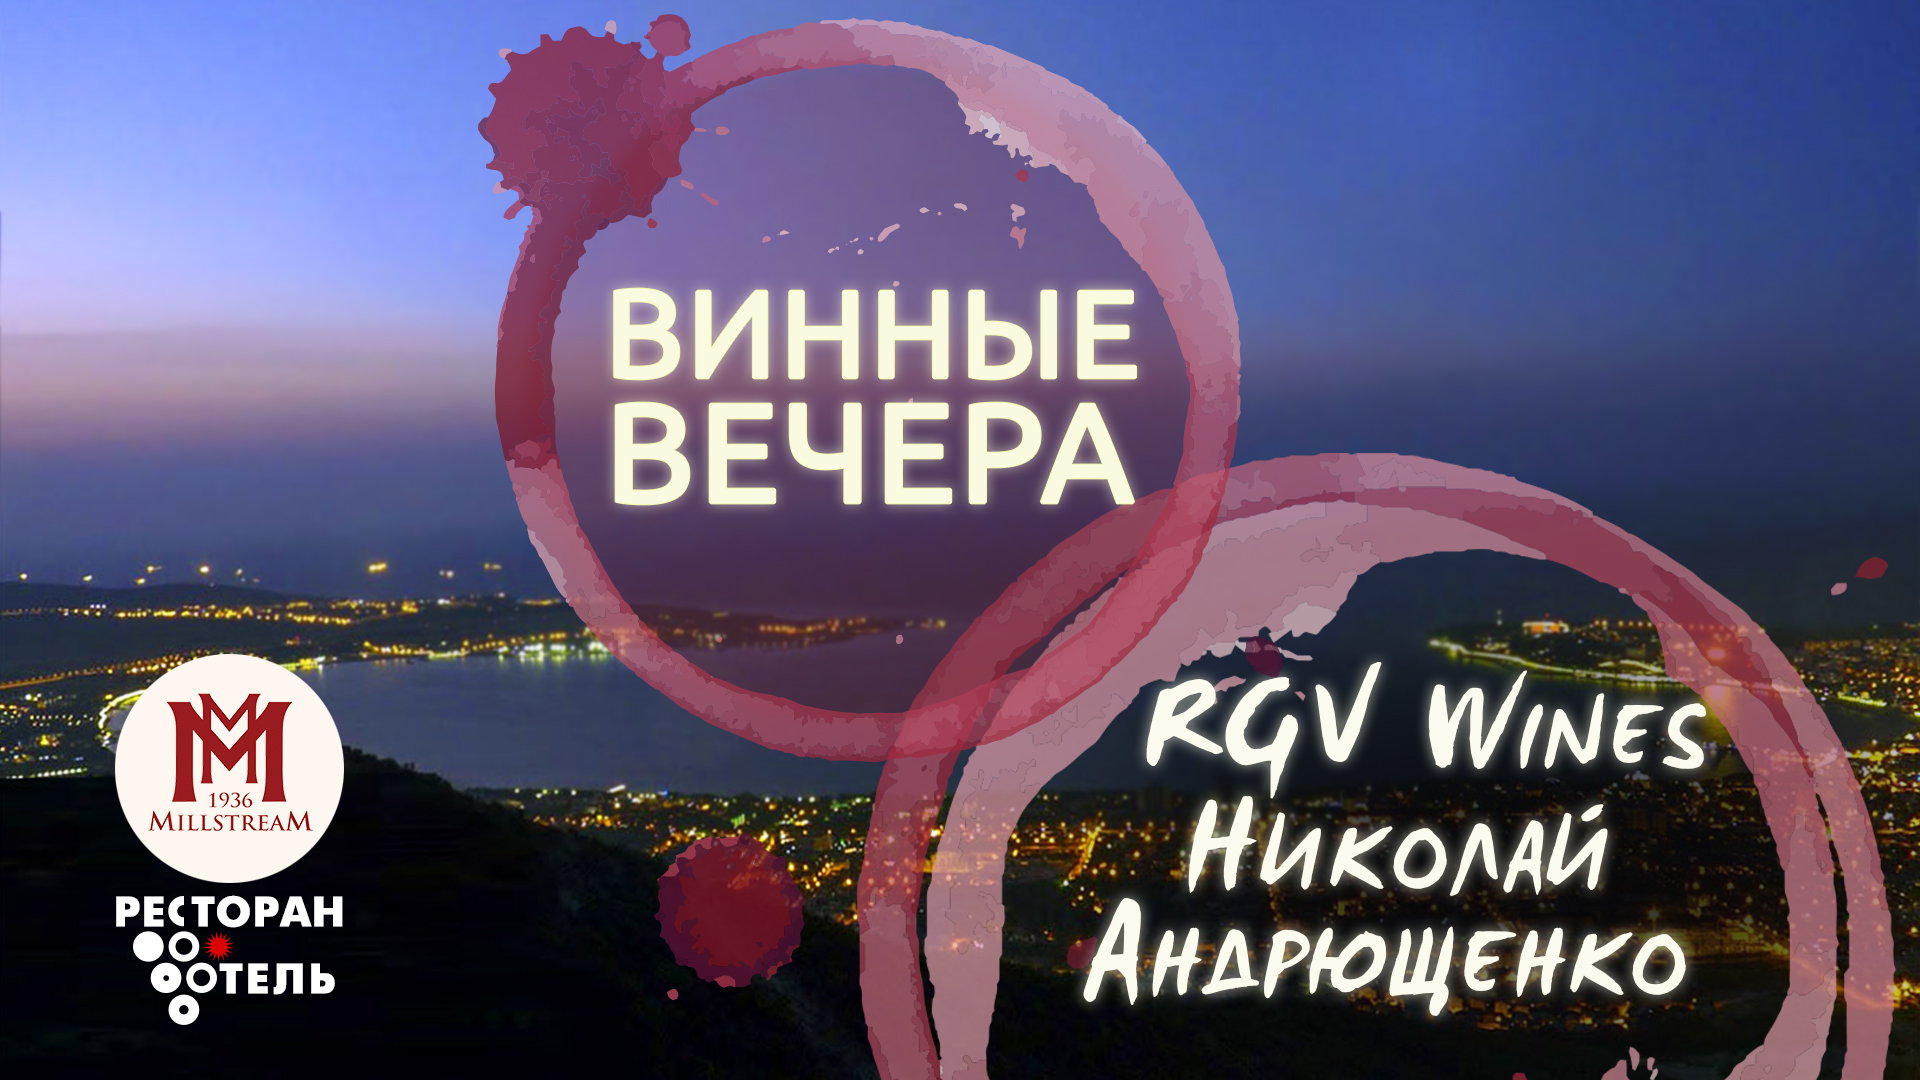 Винный вечер с RGV Wines и Николаем Андрющенко